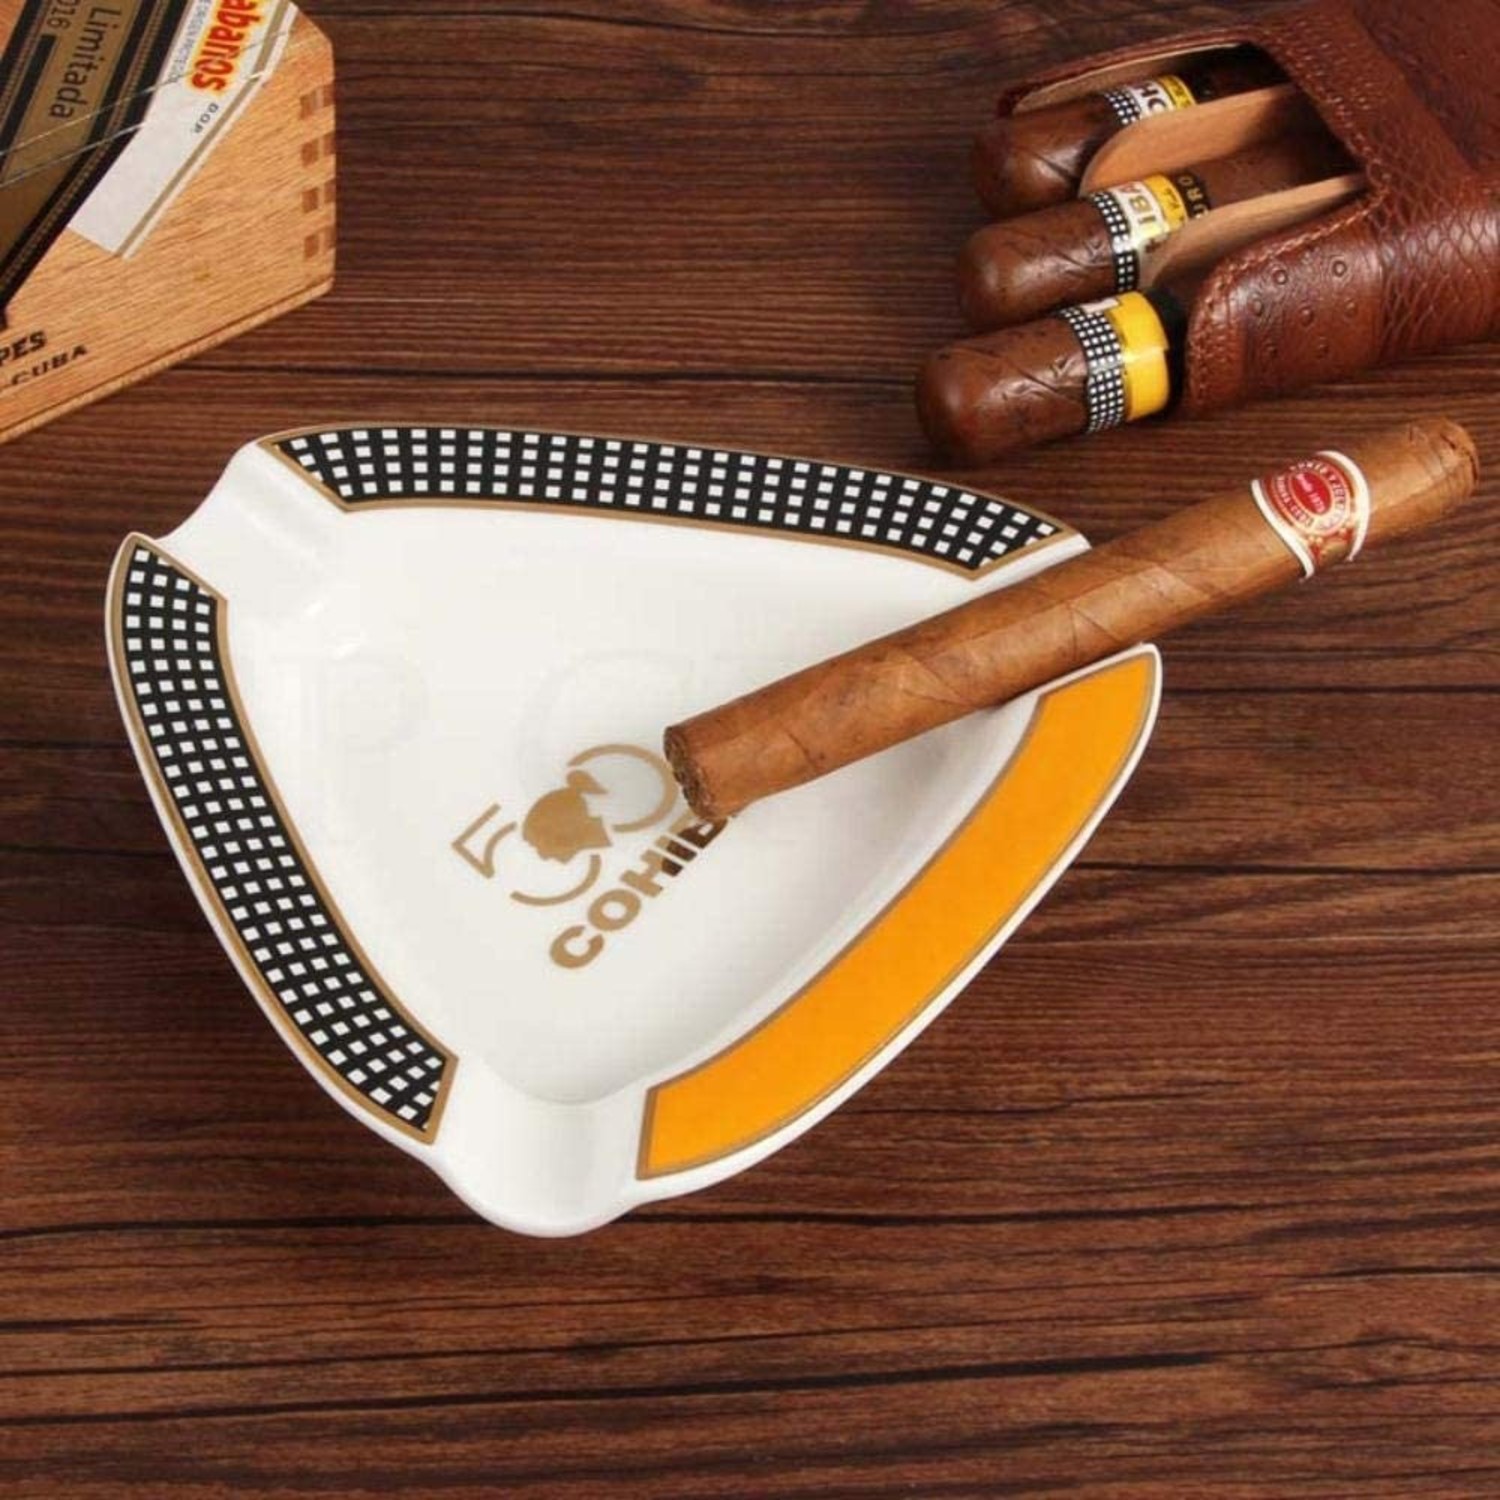 https://cdn.webshopapp.com/shops/174371/files/402008760/1500x4000x3/cohiba-keramik-aschenbecher-3-zigarren-cohiba-logo.jpg